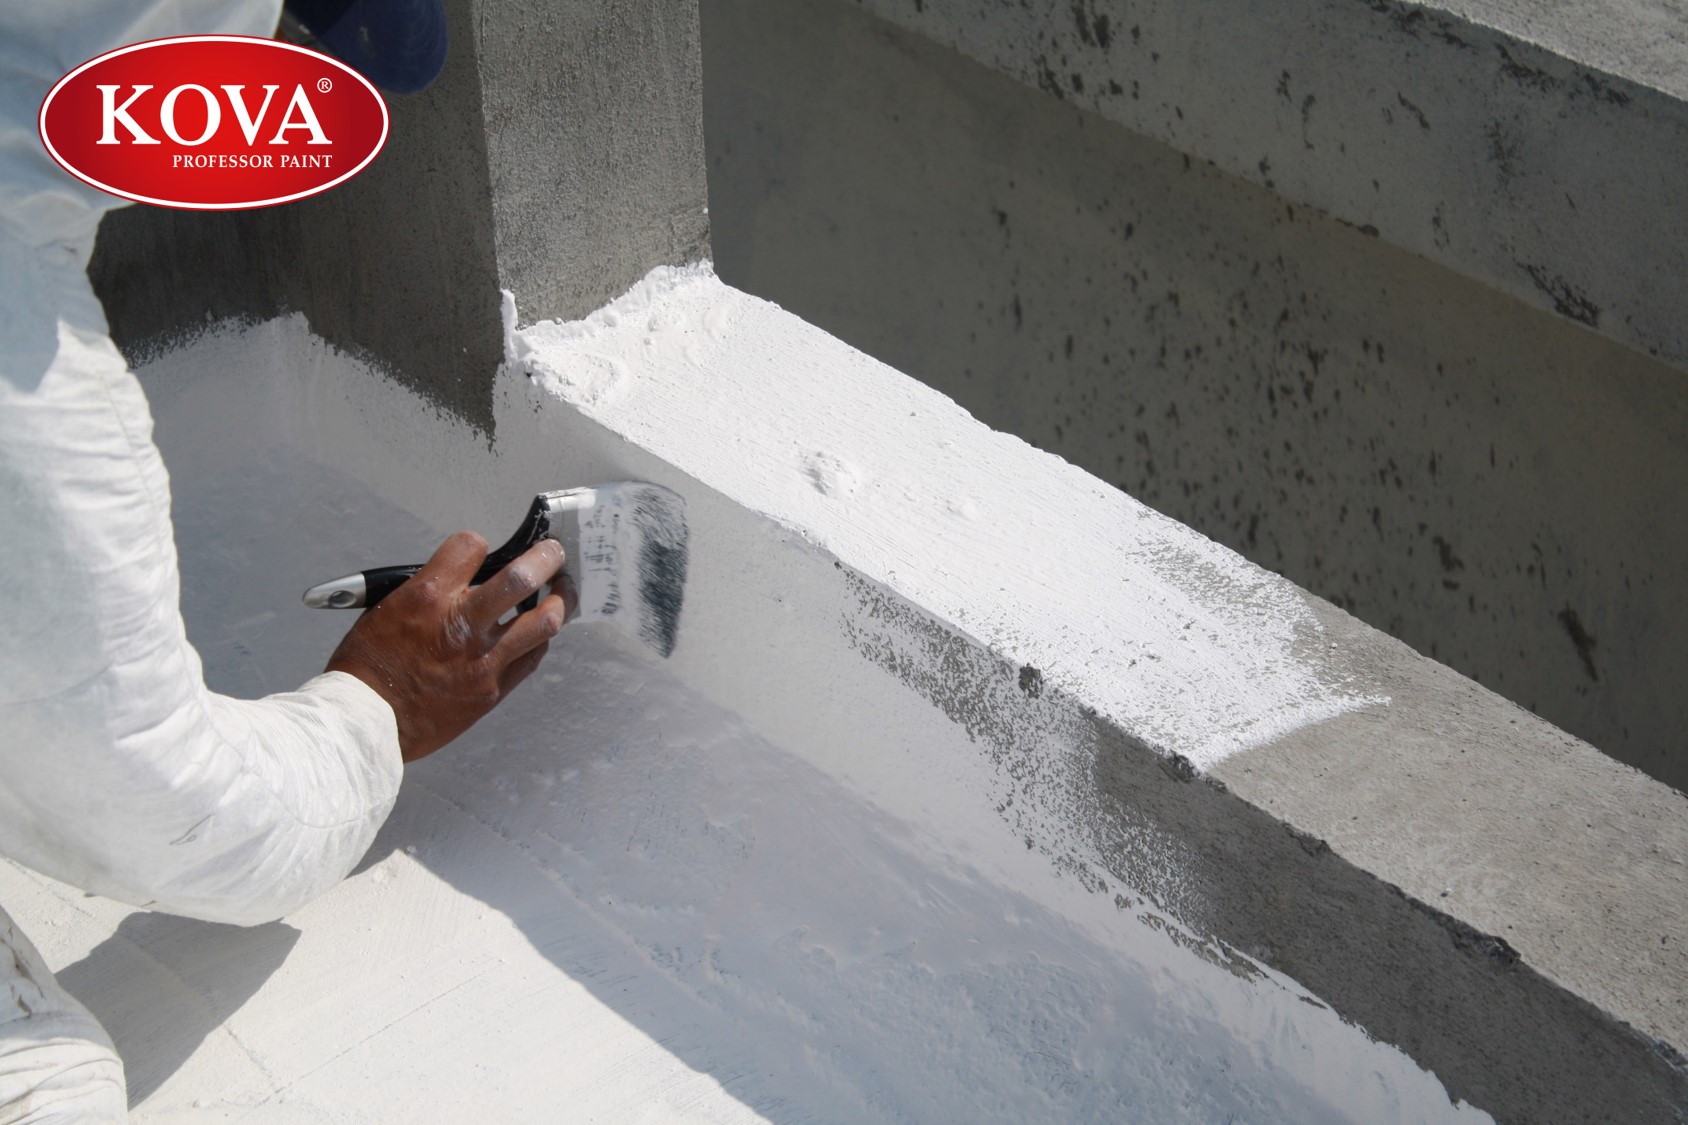 Với chất chống thấm tường, tường nhà của bạn sẽ được bảo vệ chắc chắn khỏi nước, độ ẩm và nấm mốc. Hãy xem những hình ảnh đẹp và chi tiết về chất chống thấm tường để biết thêm thông tin và lựa chọn sản phẩm phù hợp.